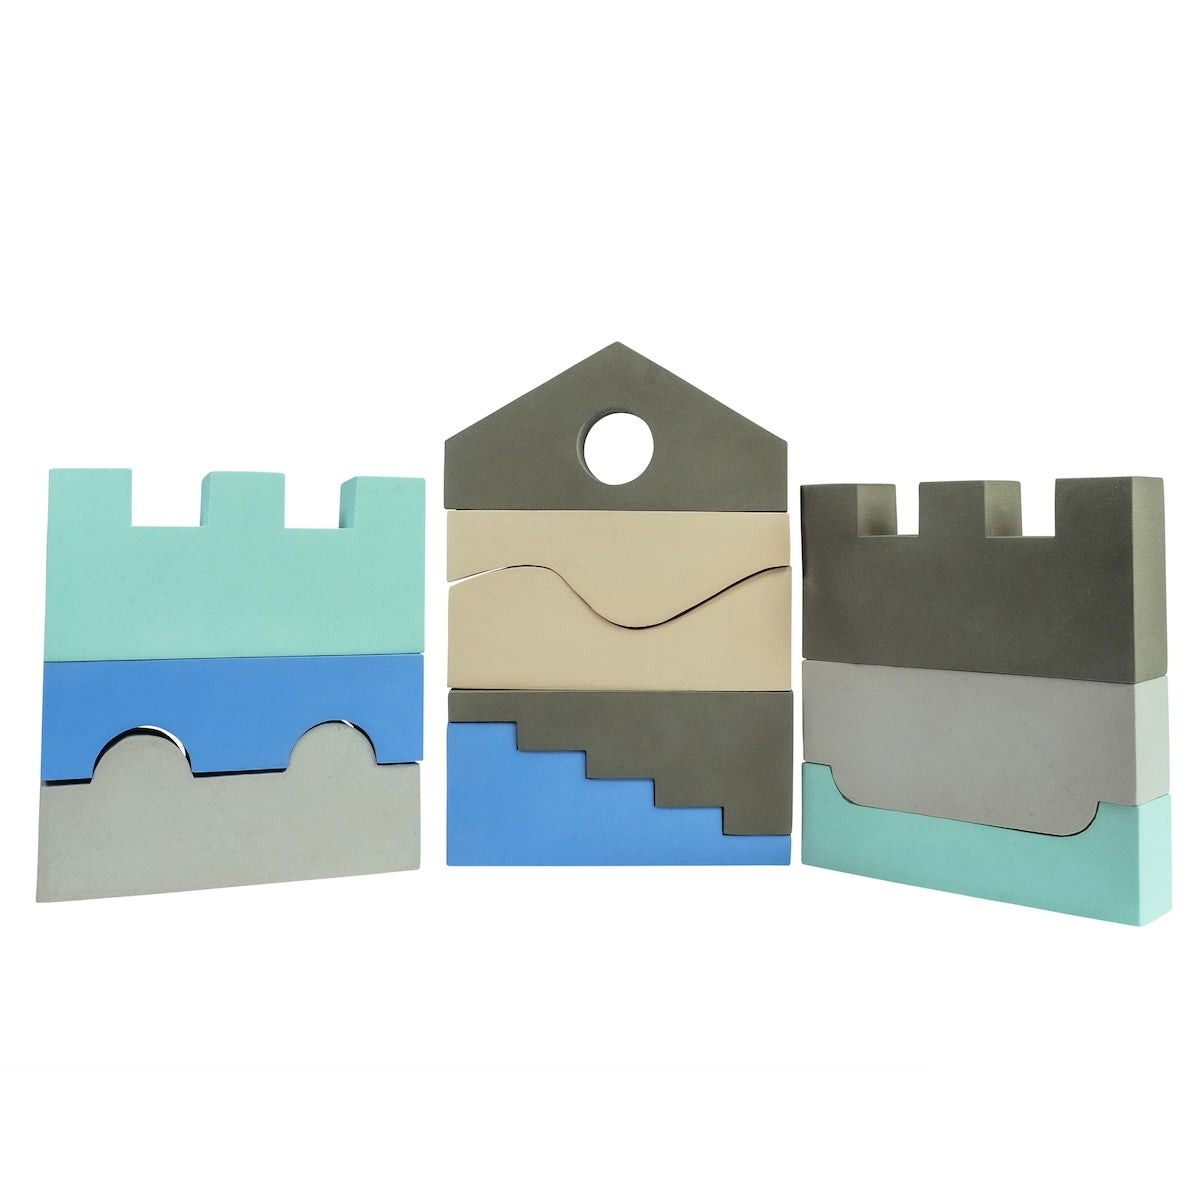 Deze leuke puzzle blocks in het kleurenpalet sky van het merk Moes Play bestaan uit 11 unieke blokken waarmee je kindje verschillende bouwwerken kan creëren. De blokken zullen zorgen voor uren speelplezier. Laat de fantasie de vrije loop en bouw de meest unieke torens, kastelen en bouwwerken. VanZus